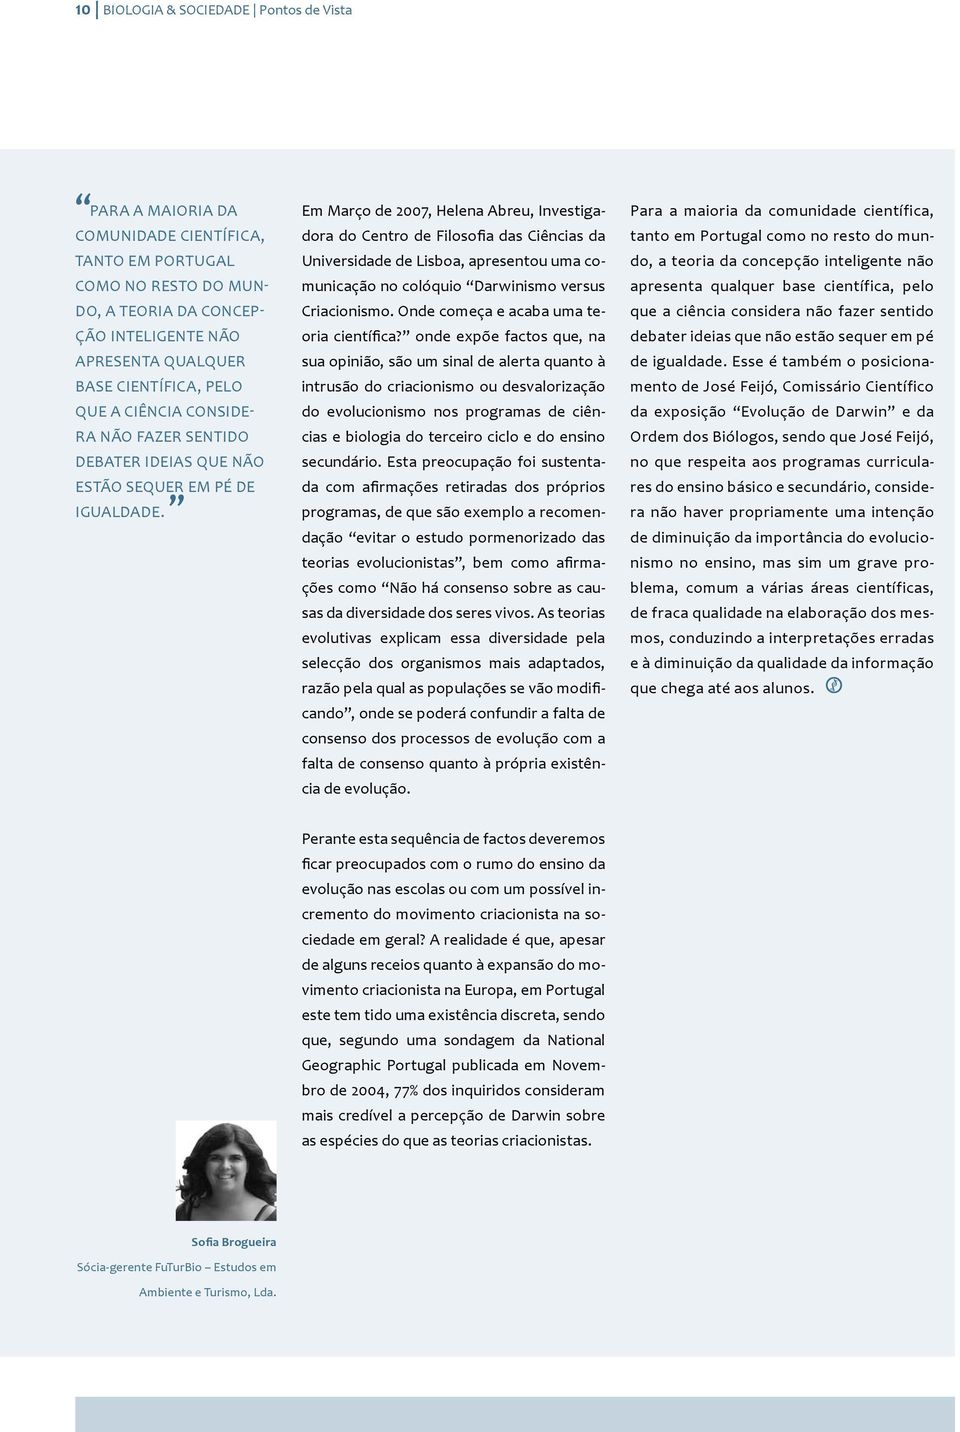 Em Março de 2007, Helena Abreu, Investigadora do Centro de Filosofia das Ciências da Universidade de Lisboa, apresentou uma comunicação no colóquio Darwinismo versus Criacionismo.